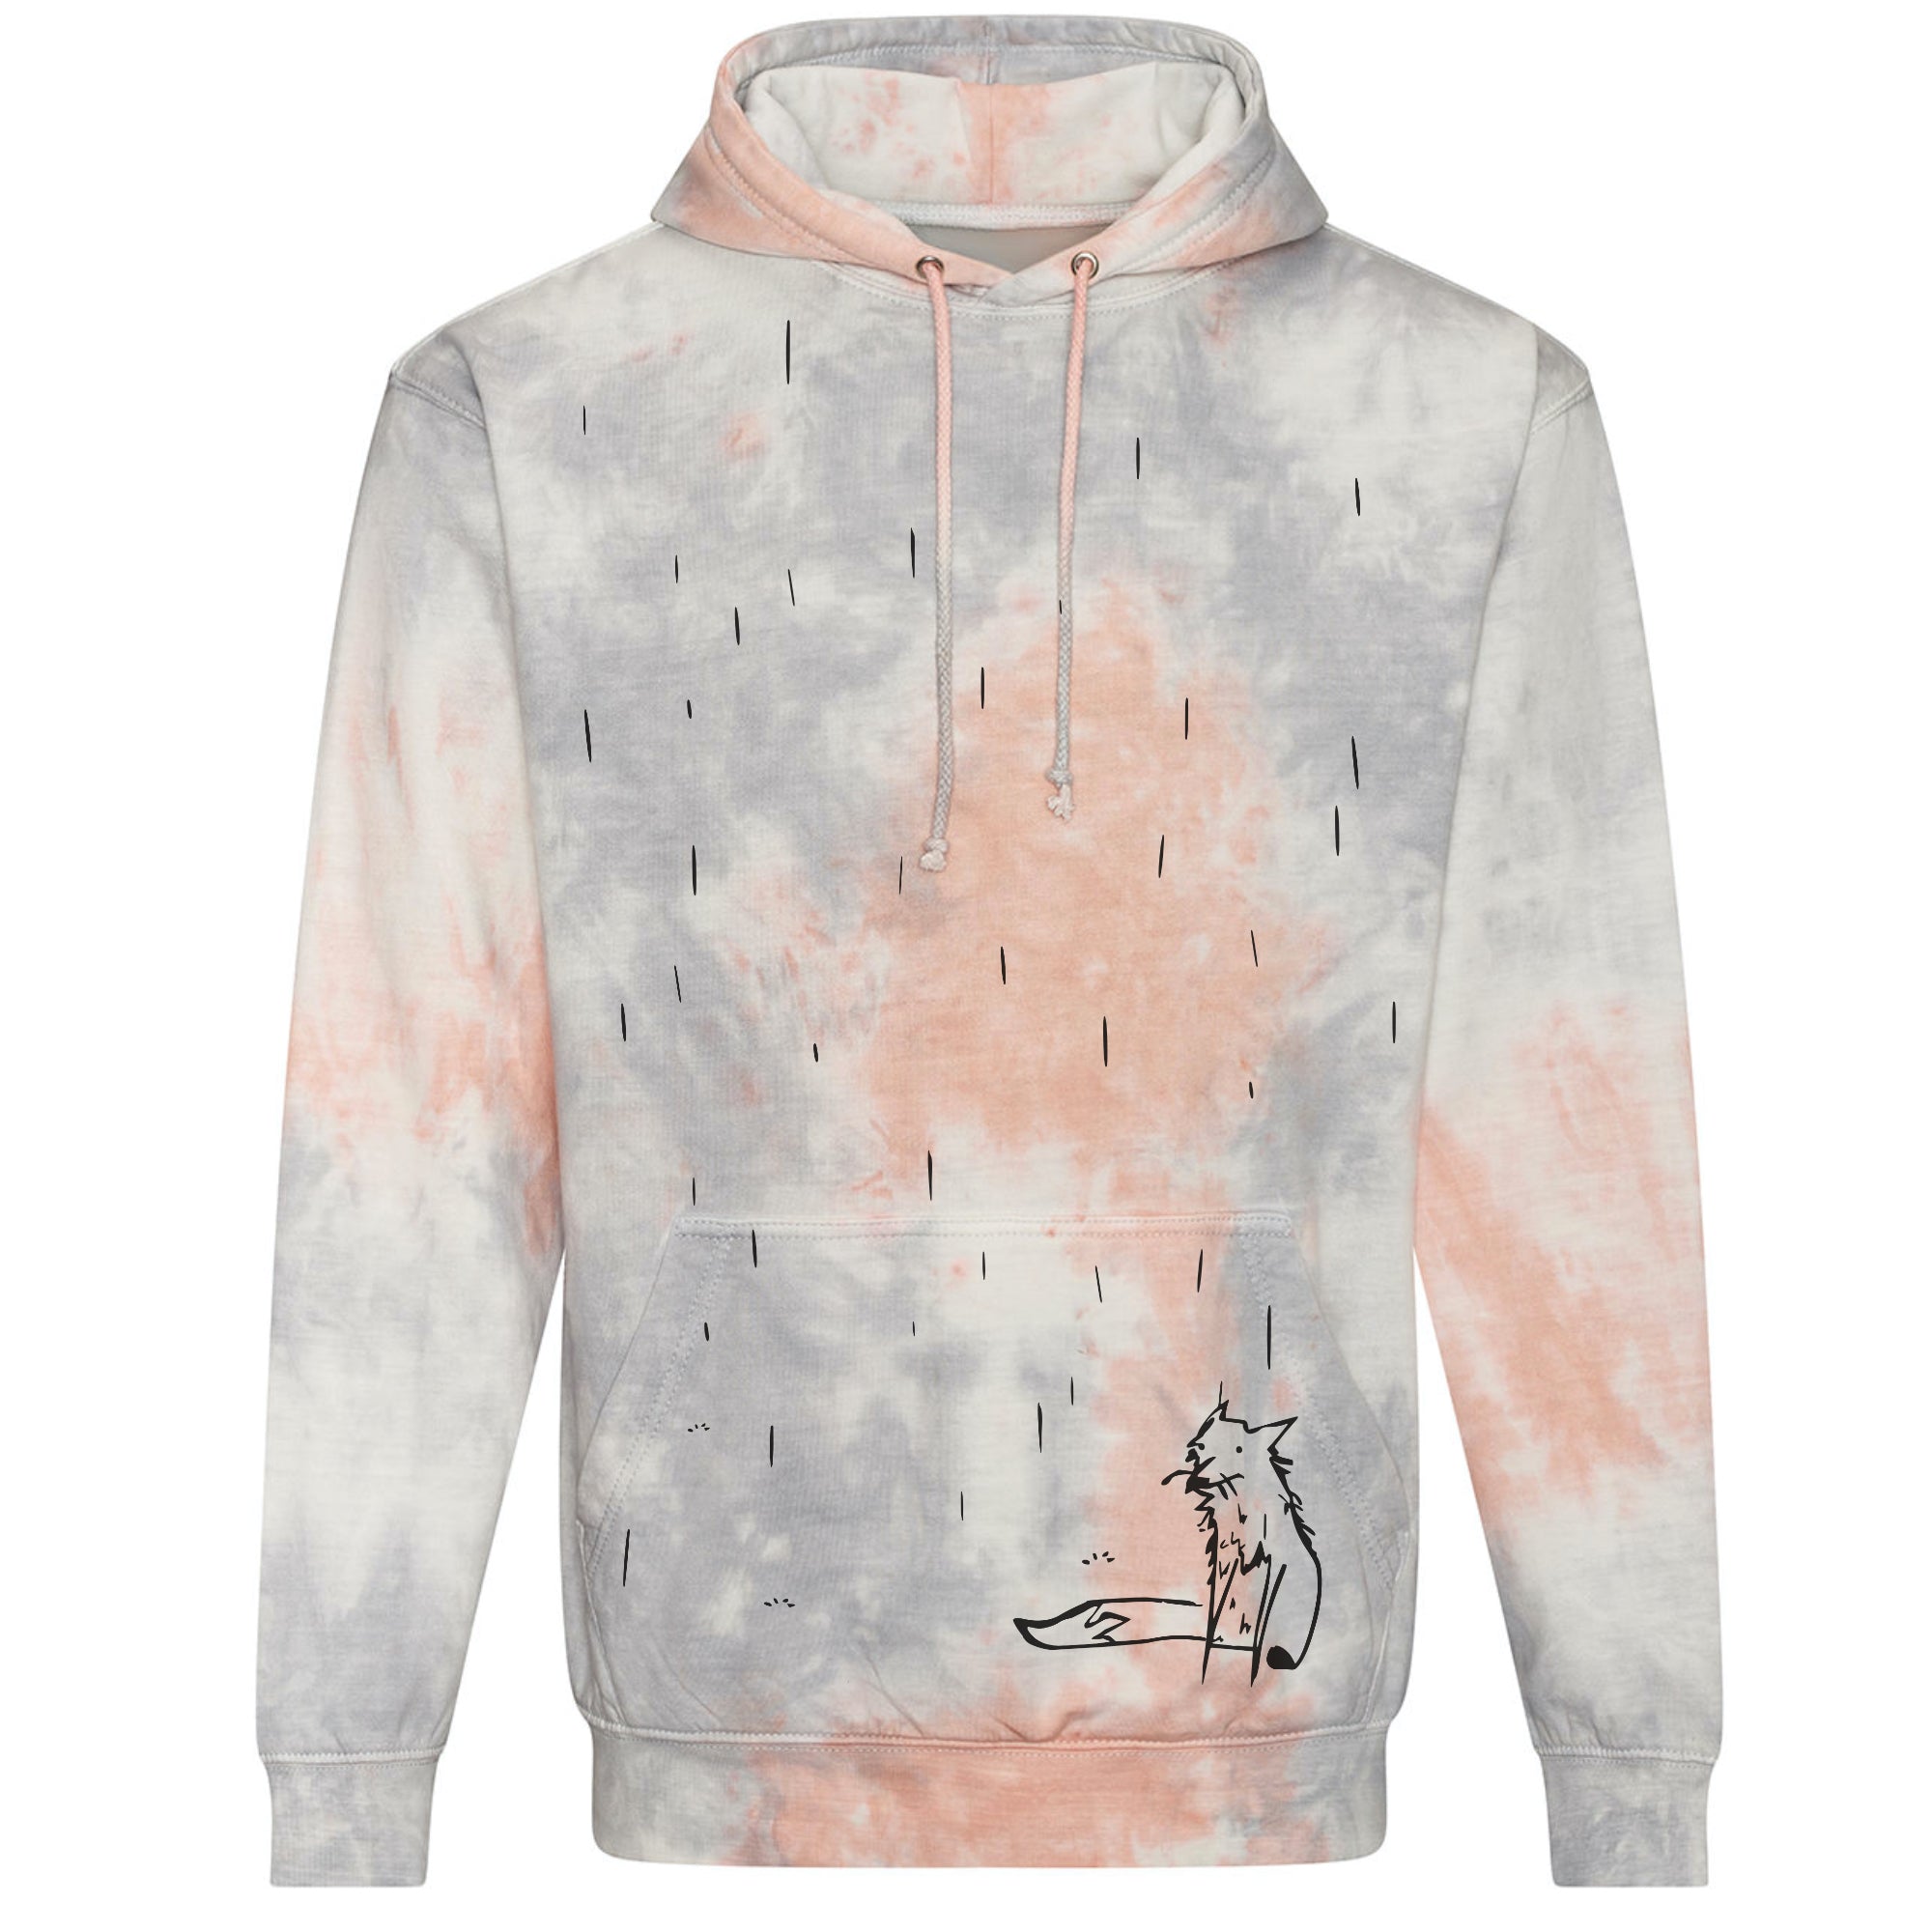 Tie dye hoodie, fox in the rain